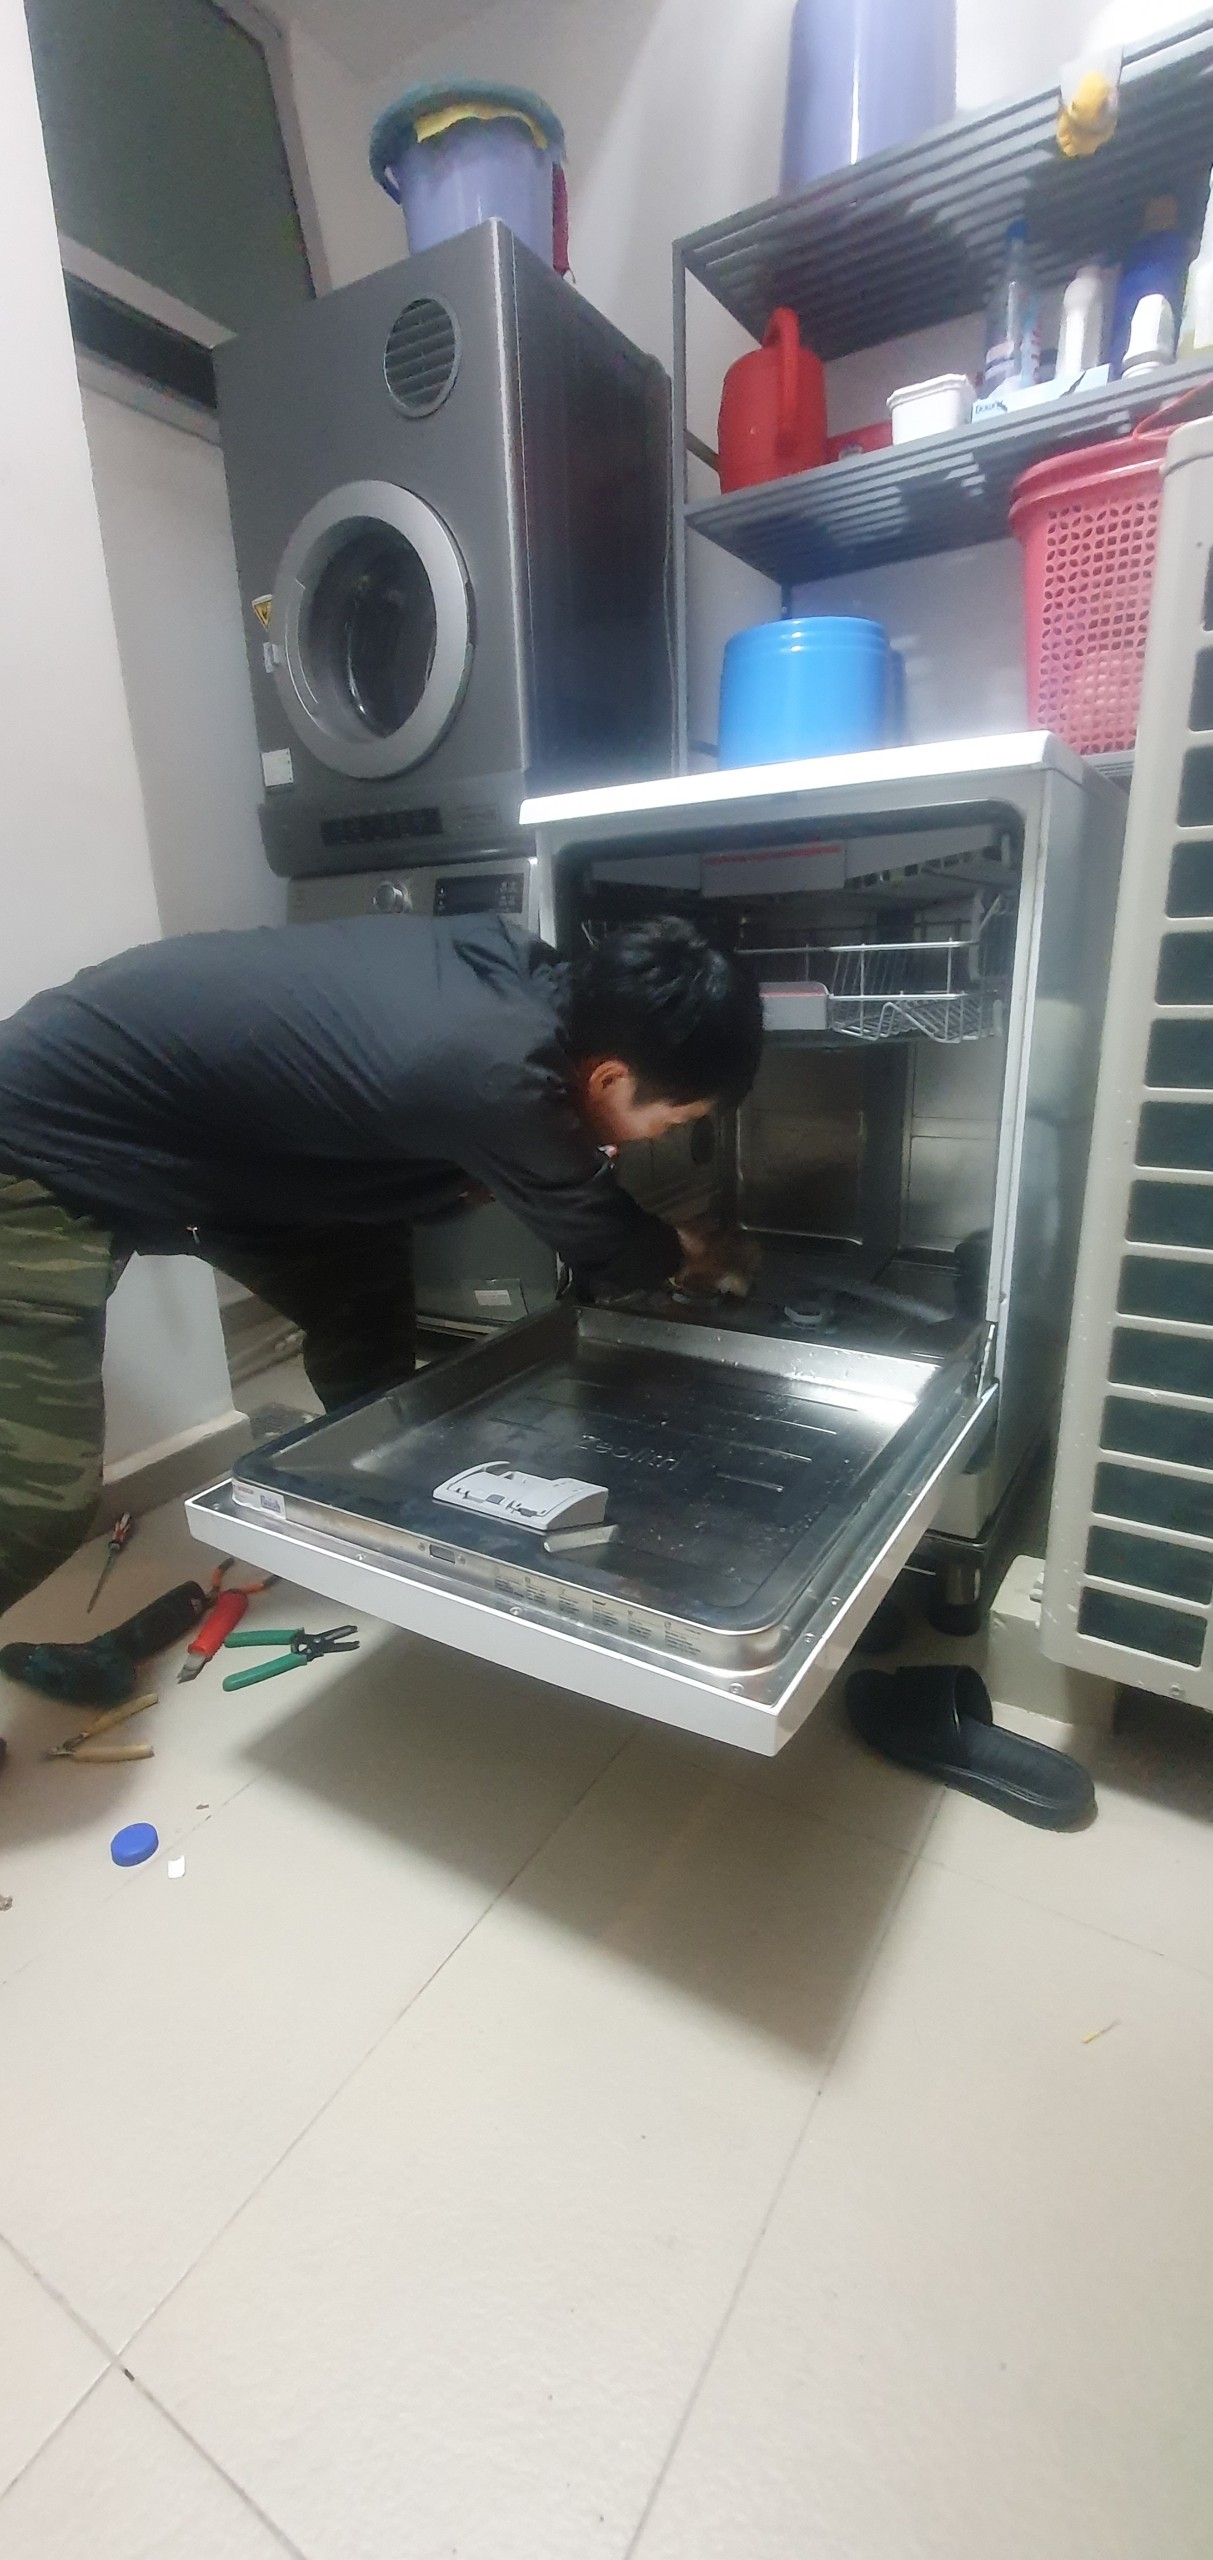 z4449111397564 2171007b1dd8ebe2746bb84bee128482 - Sửa máy rửa bát bị mất nước nóng tại nhà ở Sài Gòn